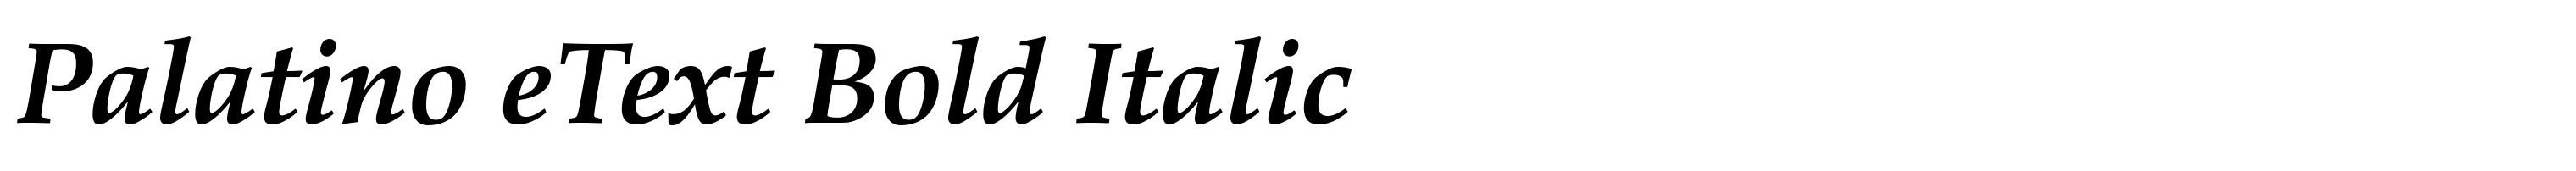 Palatino eText Bold Italic